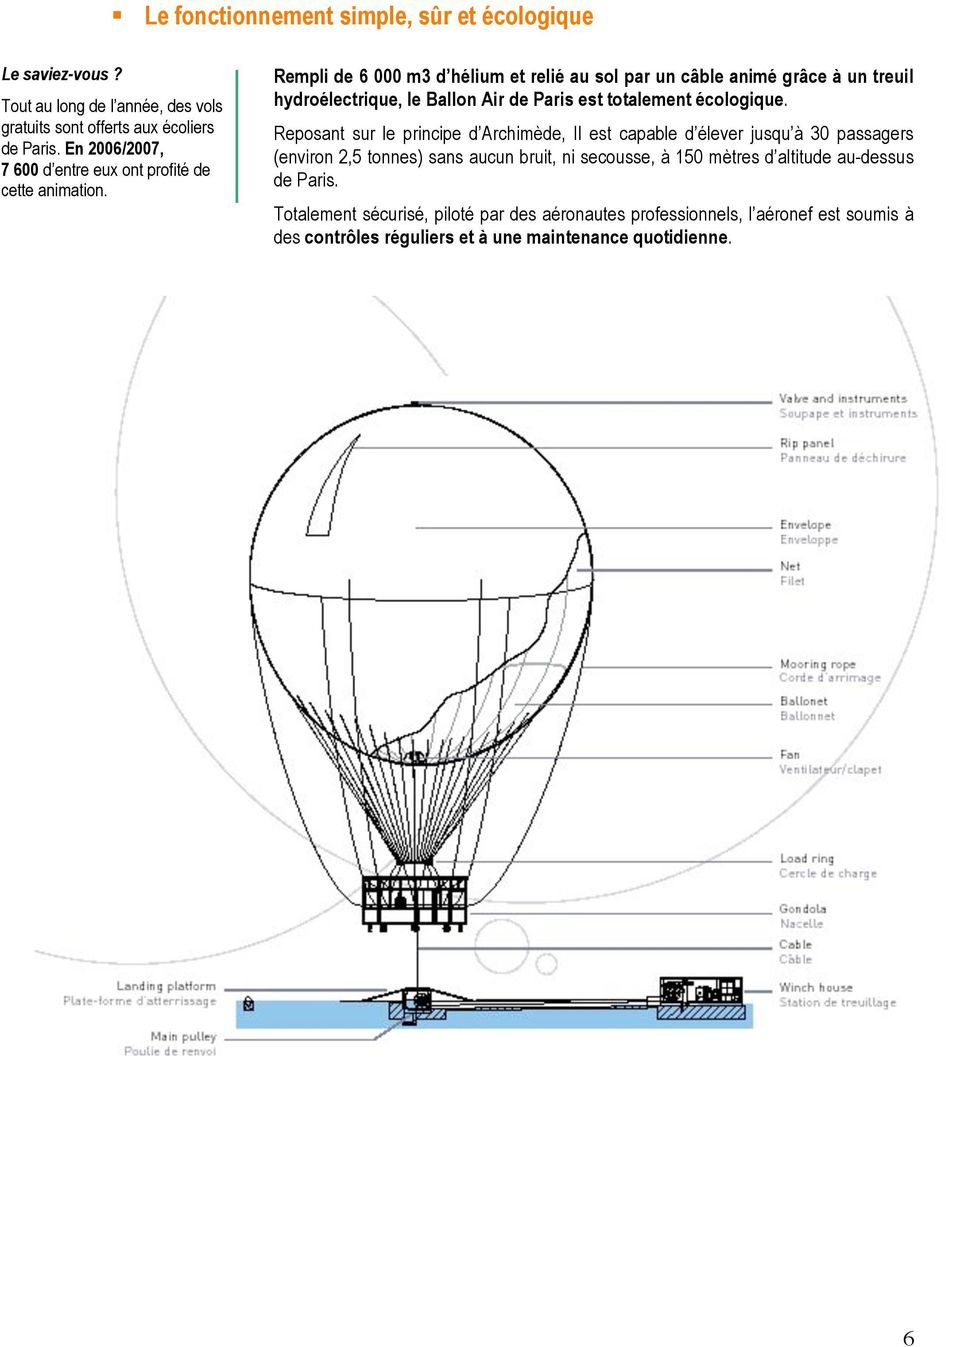 Rempli de 6 000 m3 d hélium et relié au sol par un câble animé grâce à un treuil hydroélectrique, le Ballon Air de Paris est totalement écologique.